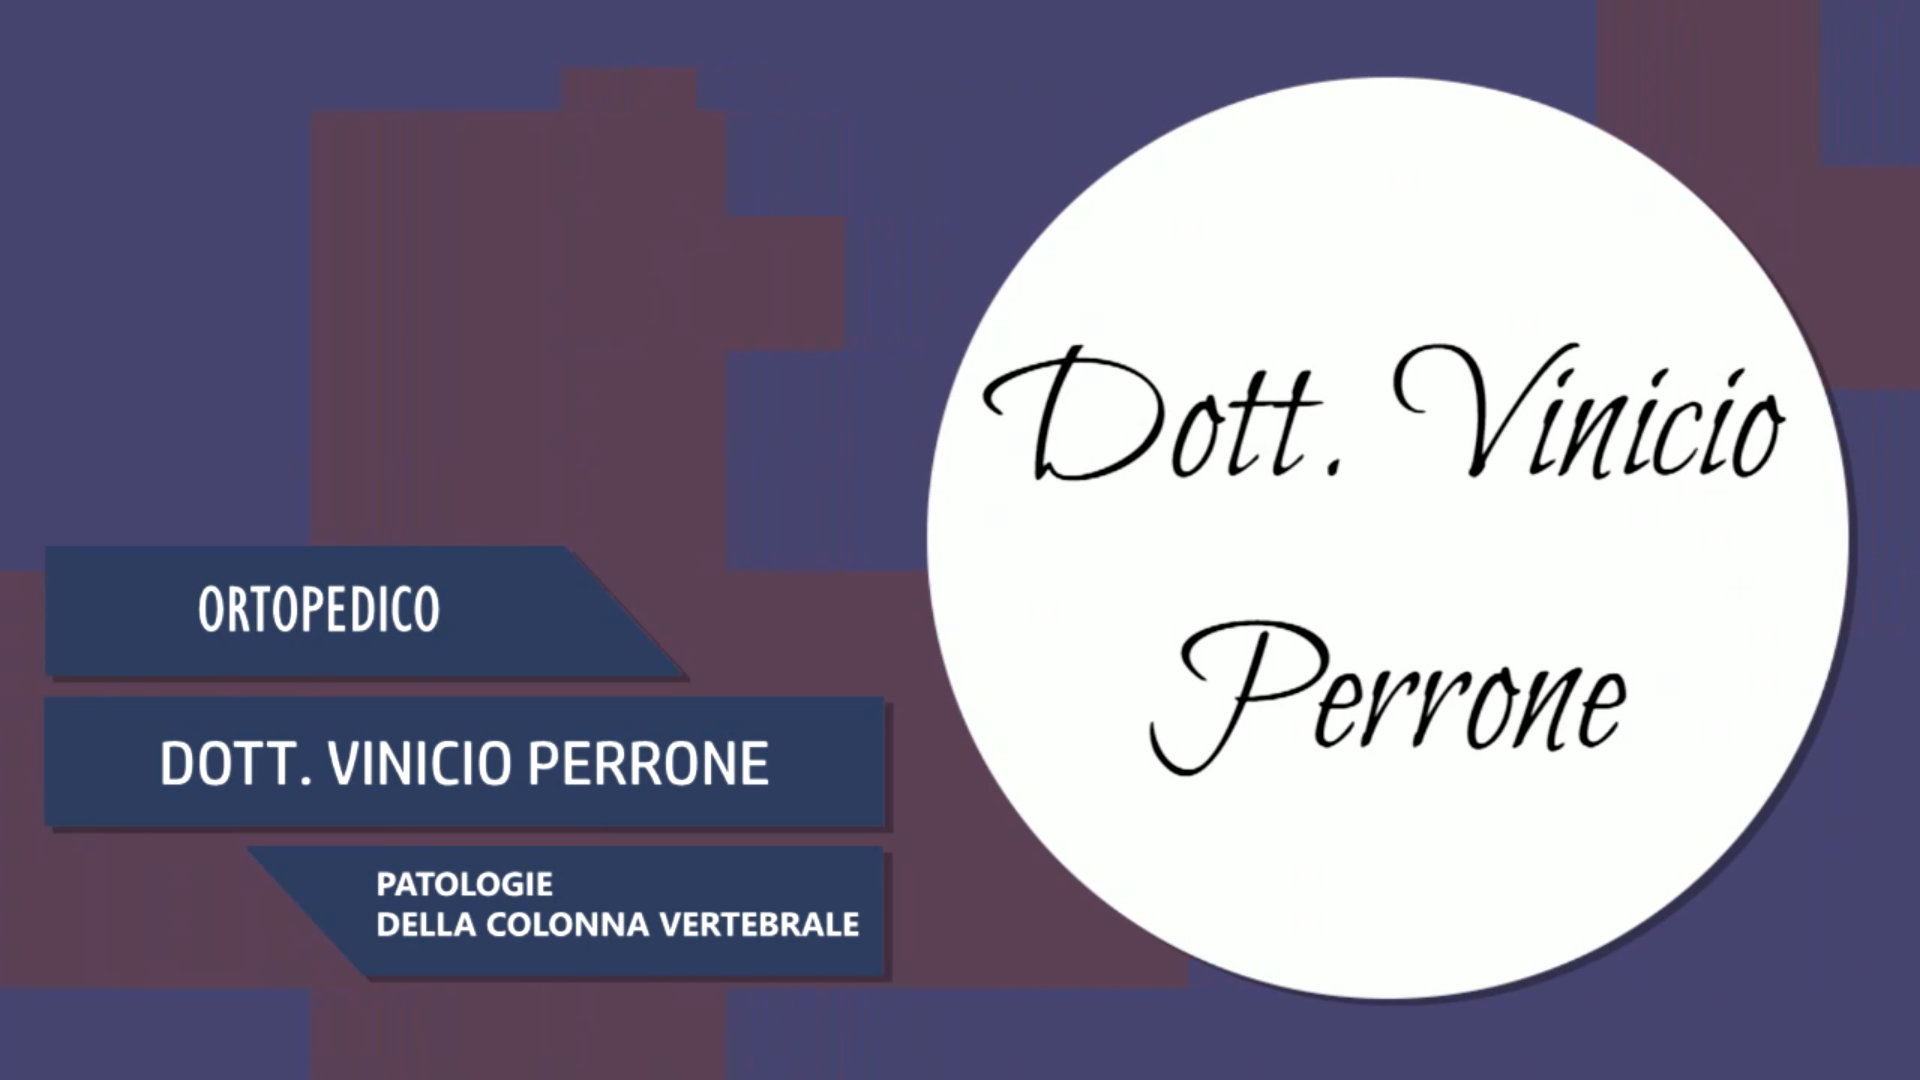 Intervista al Dott. Vinicio Perrone – Patologie della colonna vertebrale